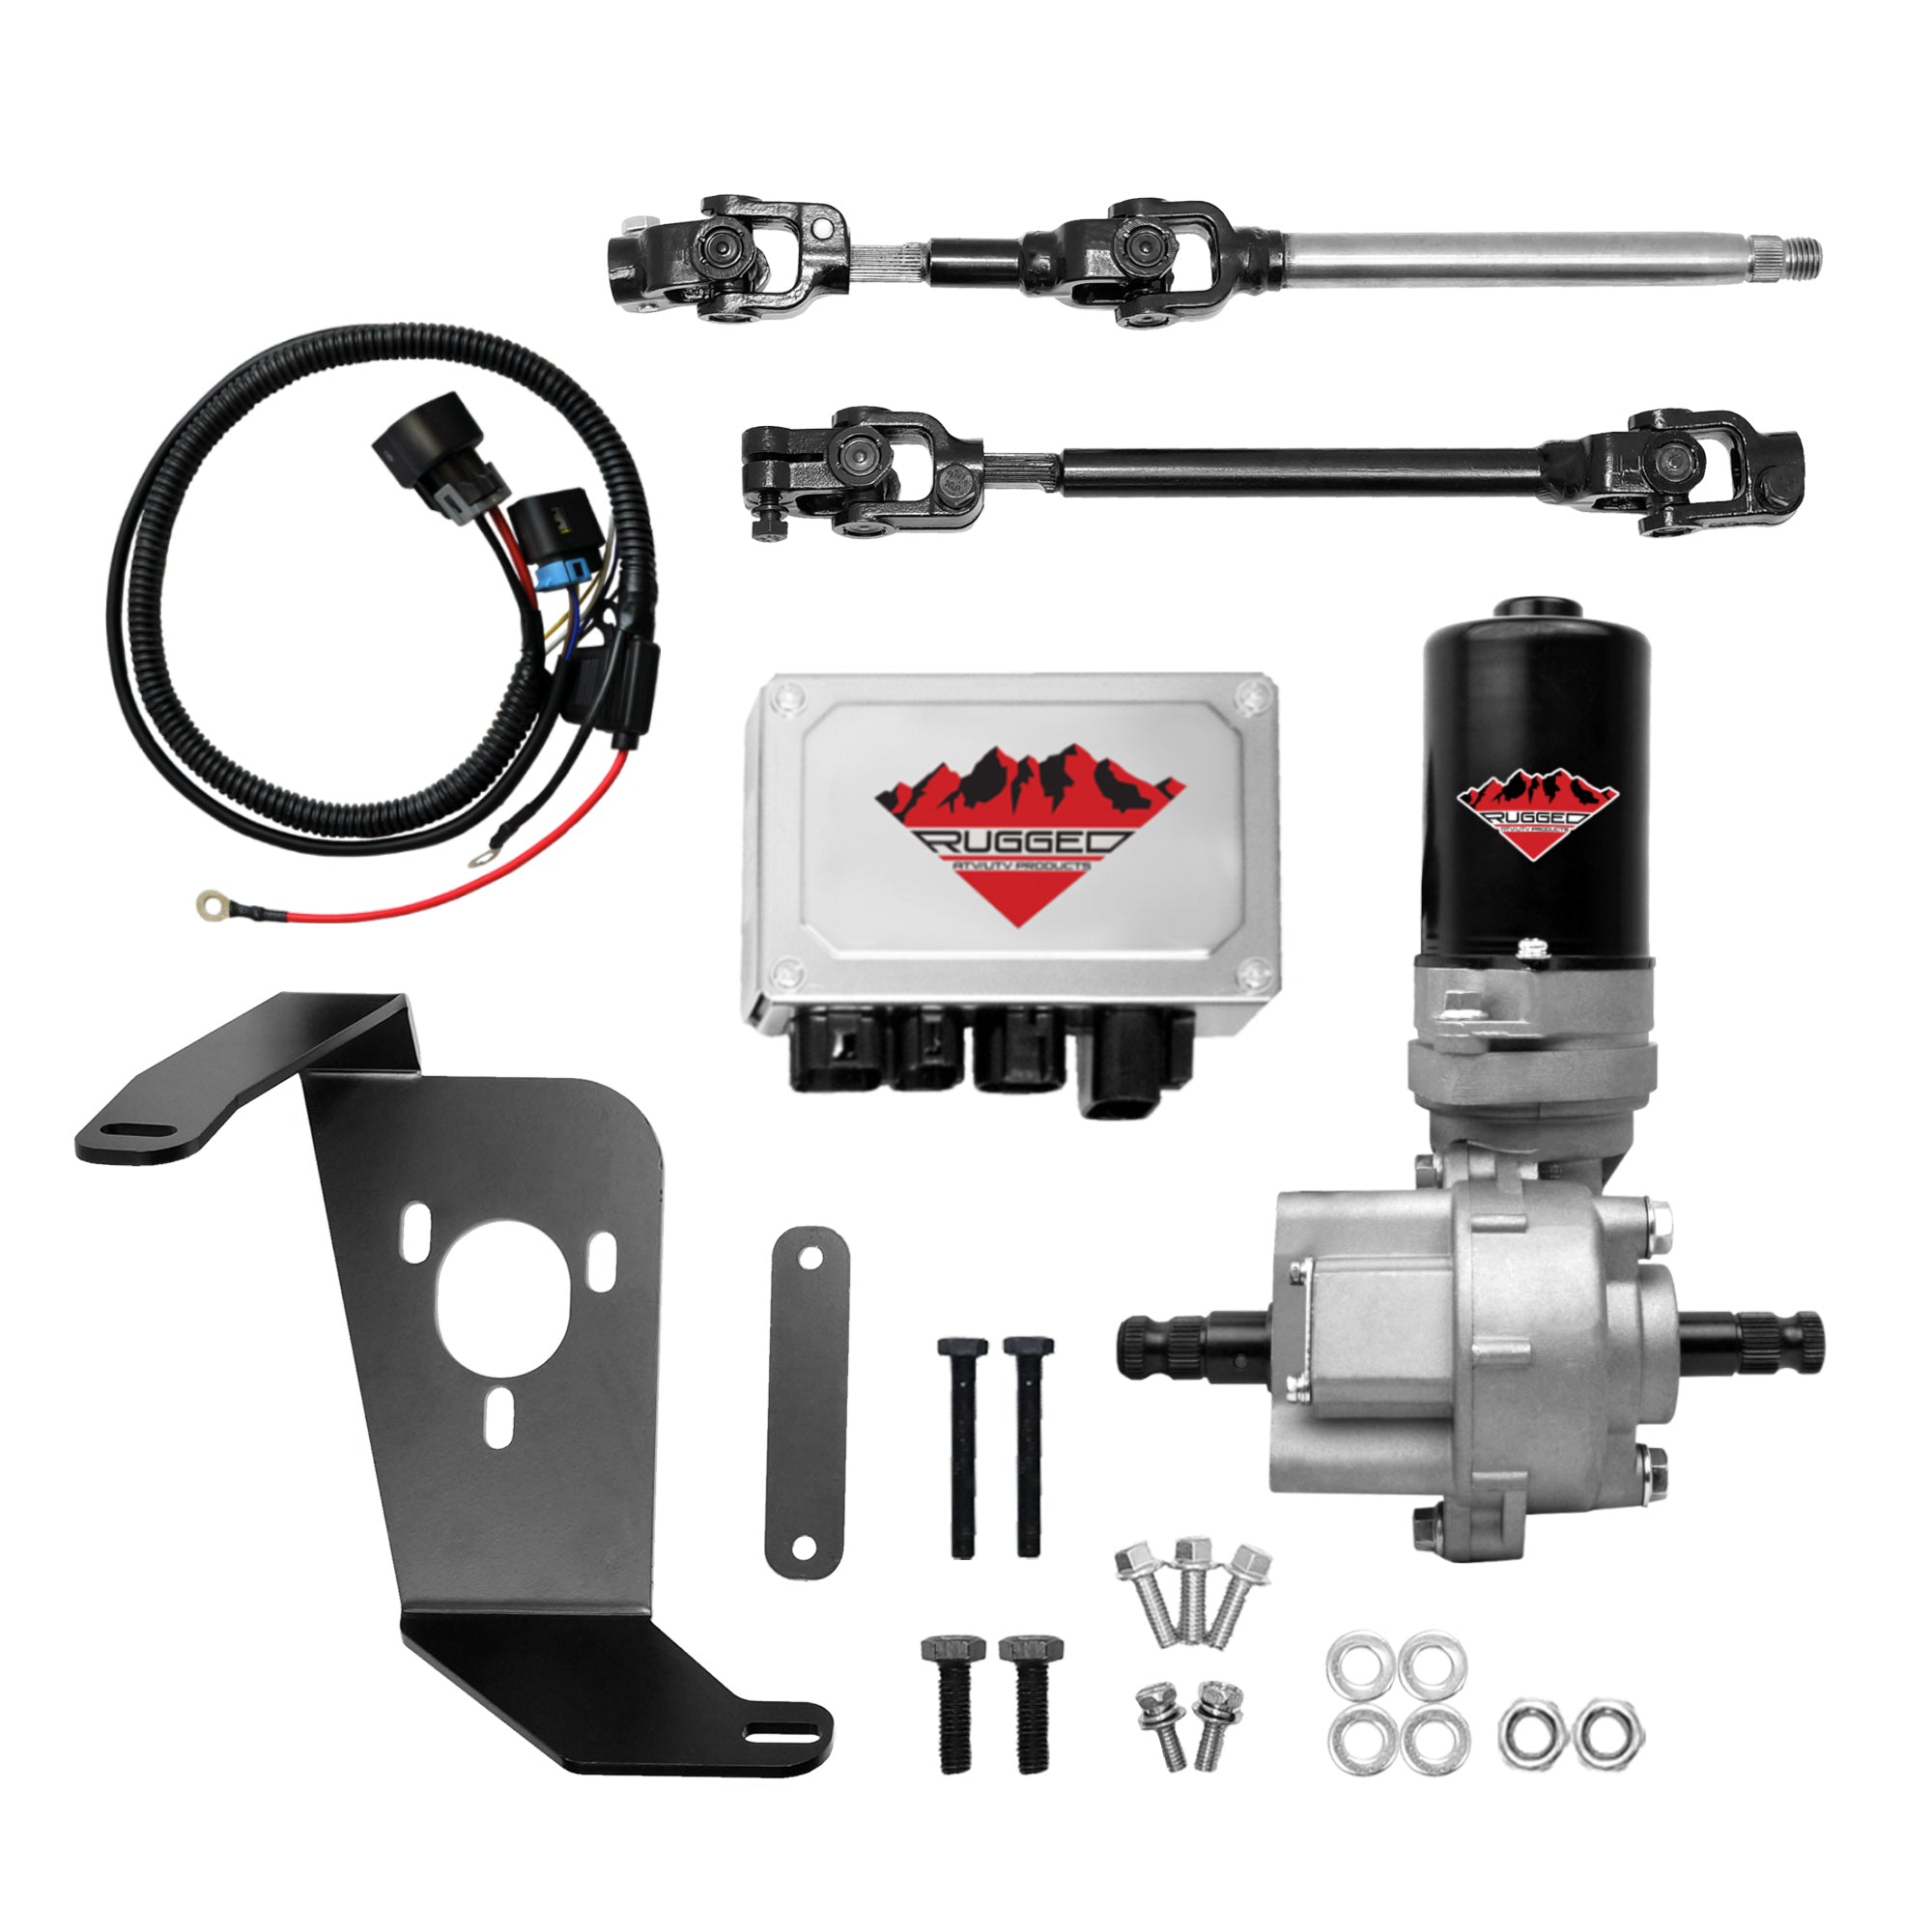 Electric Power Steering Kit for Polaris Ranger 800 